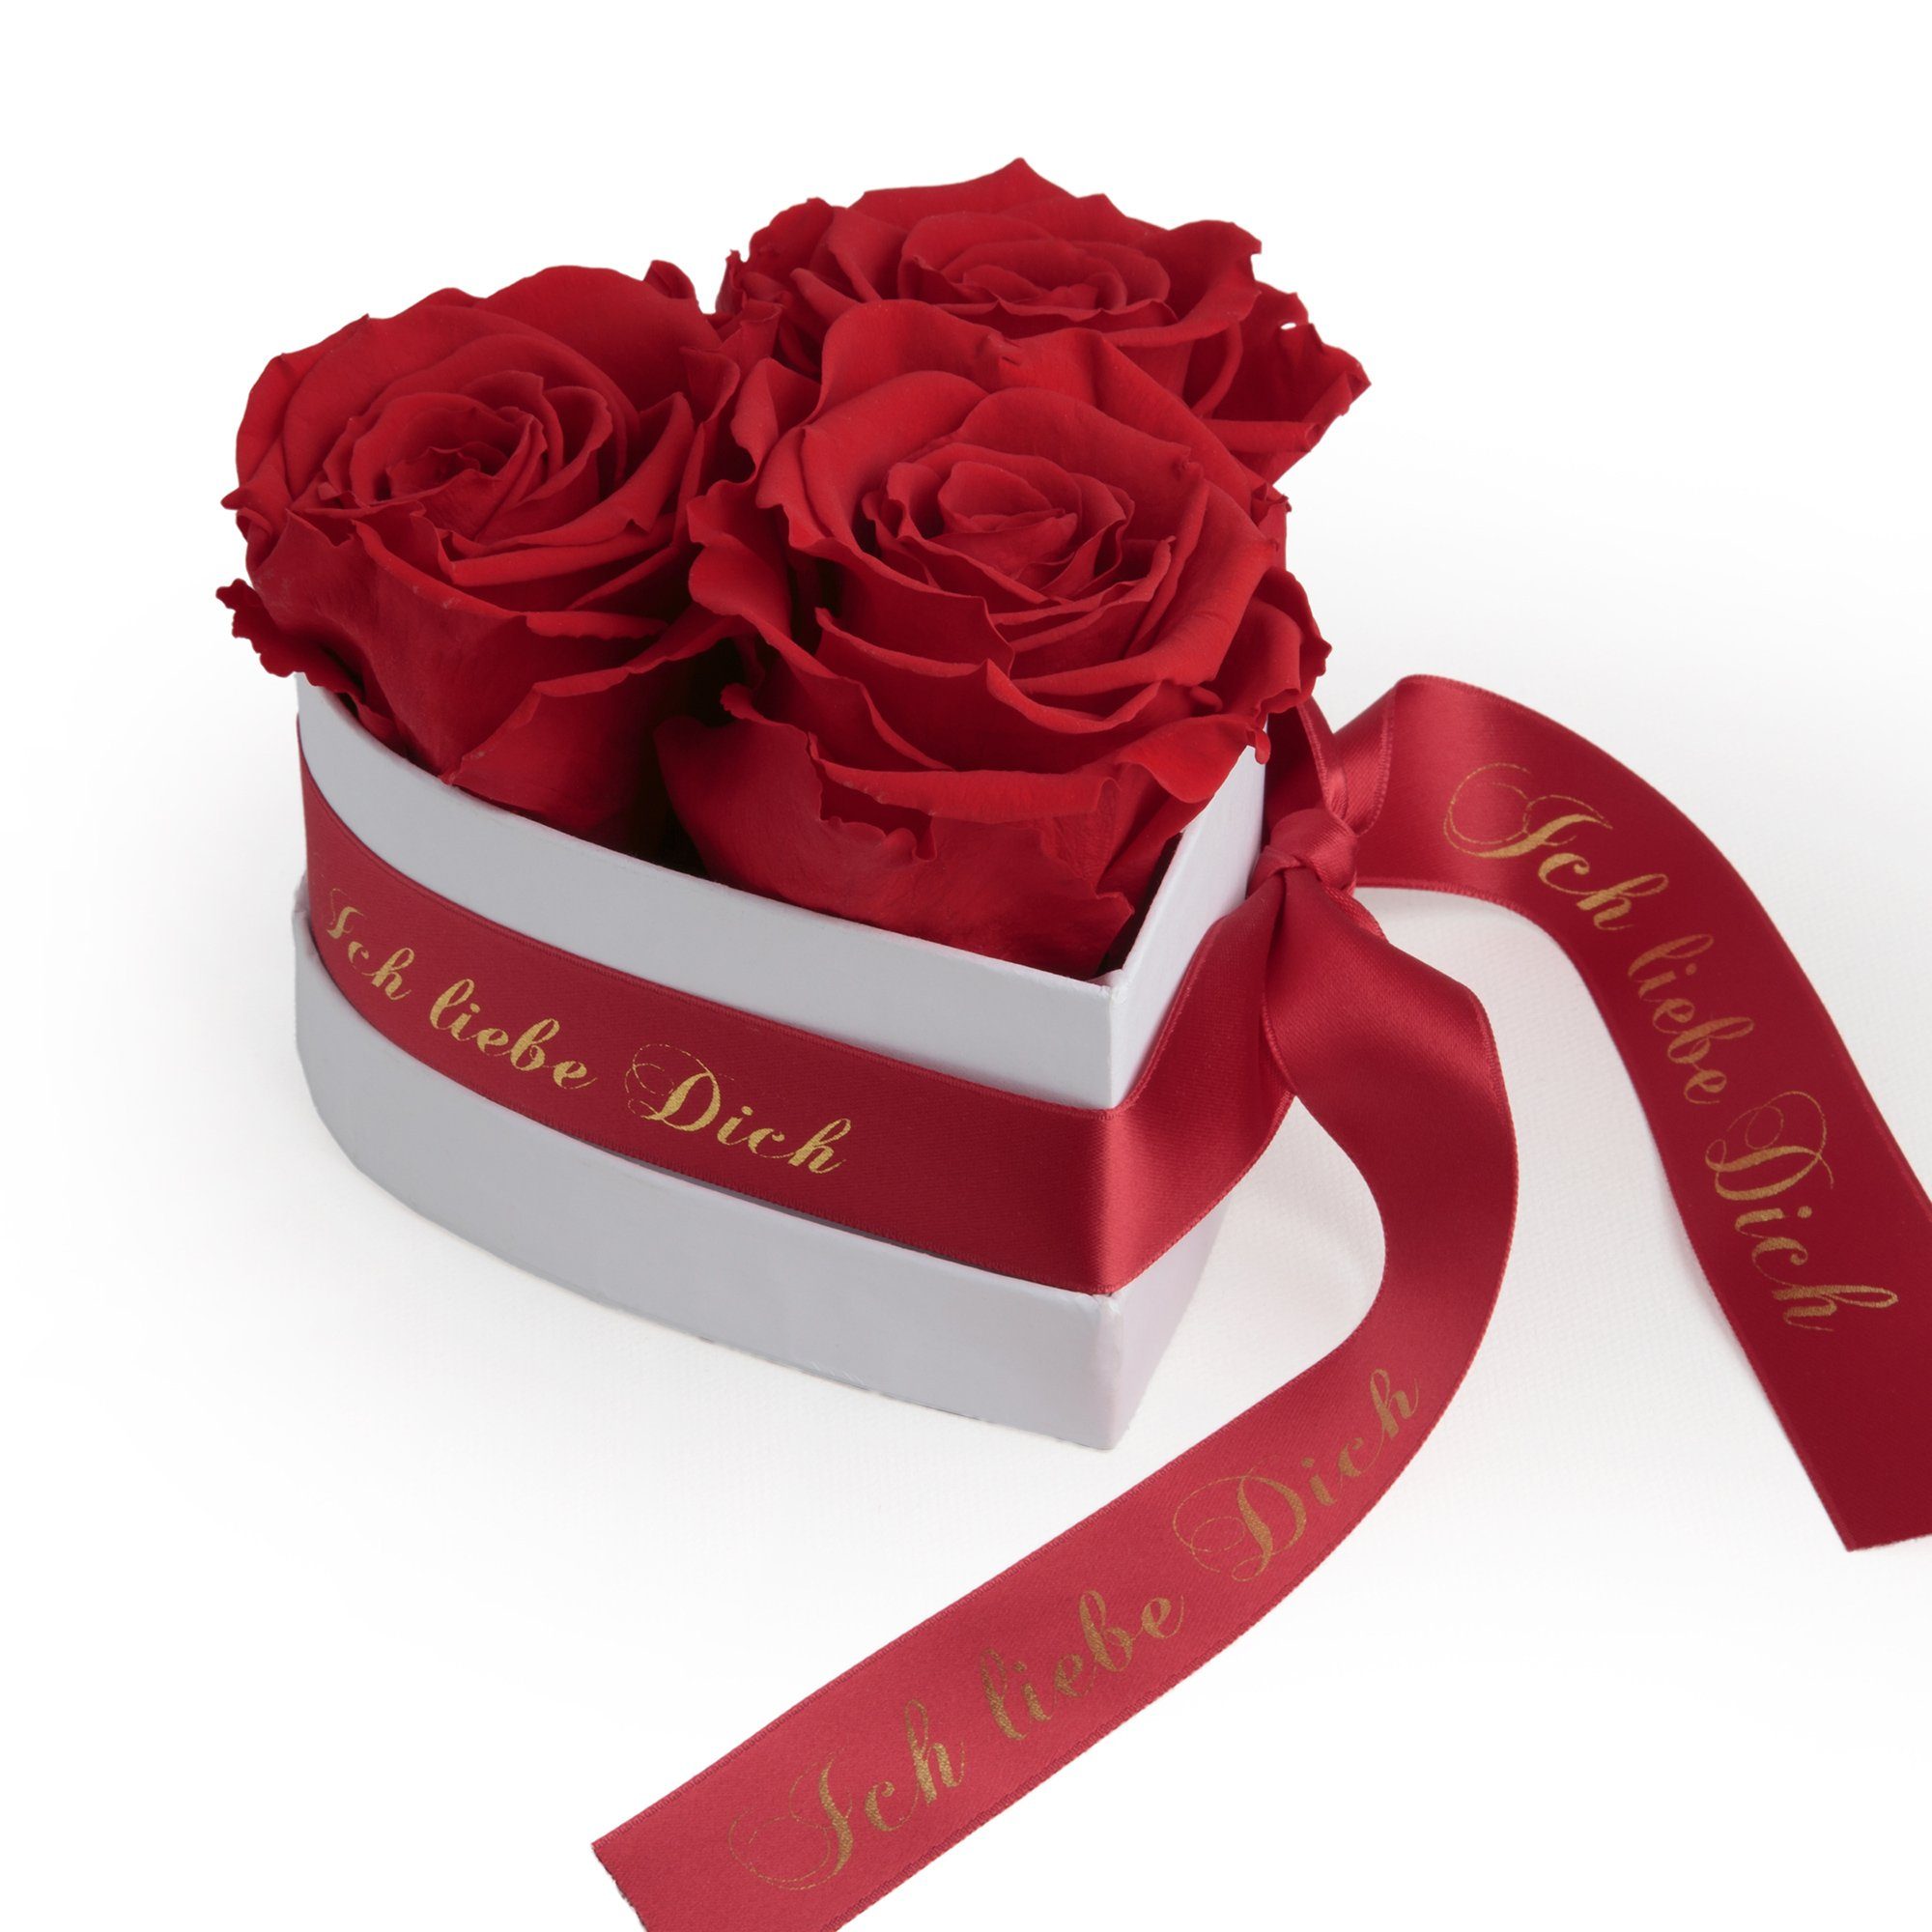 Kunstblume Rosenbox Herz 3 infinity Rosen Ich liebe Dich Geschenk für Sie Rose, ROSEMARIE SCHULZ Heidelberg, Höhe 10 cm, Liebesbeweis Valentinstag rot